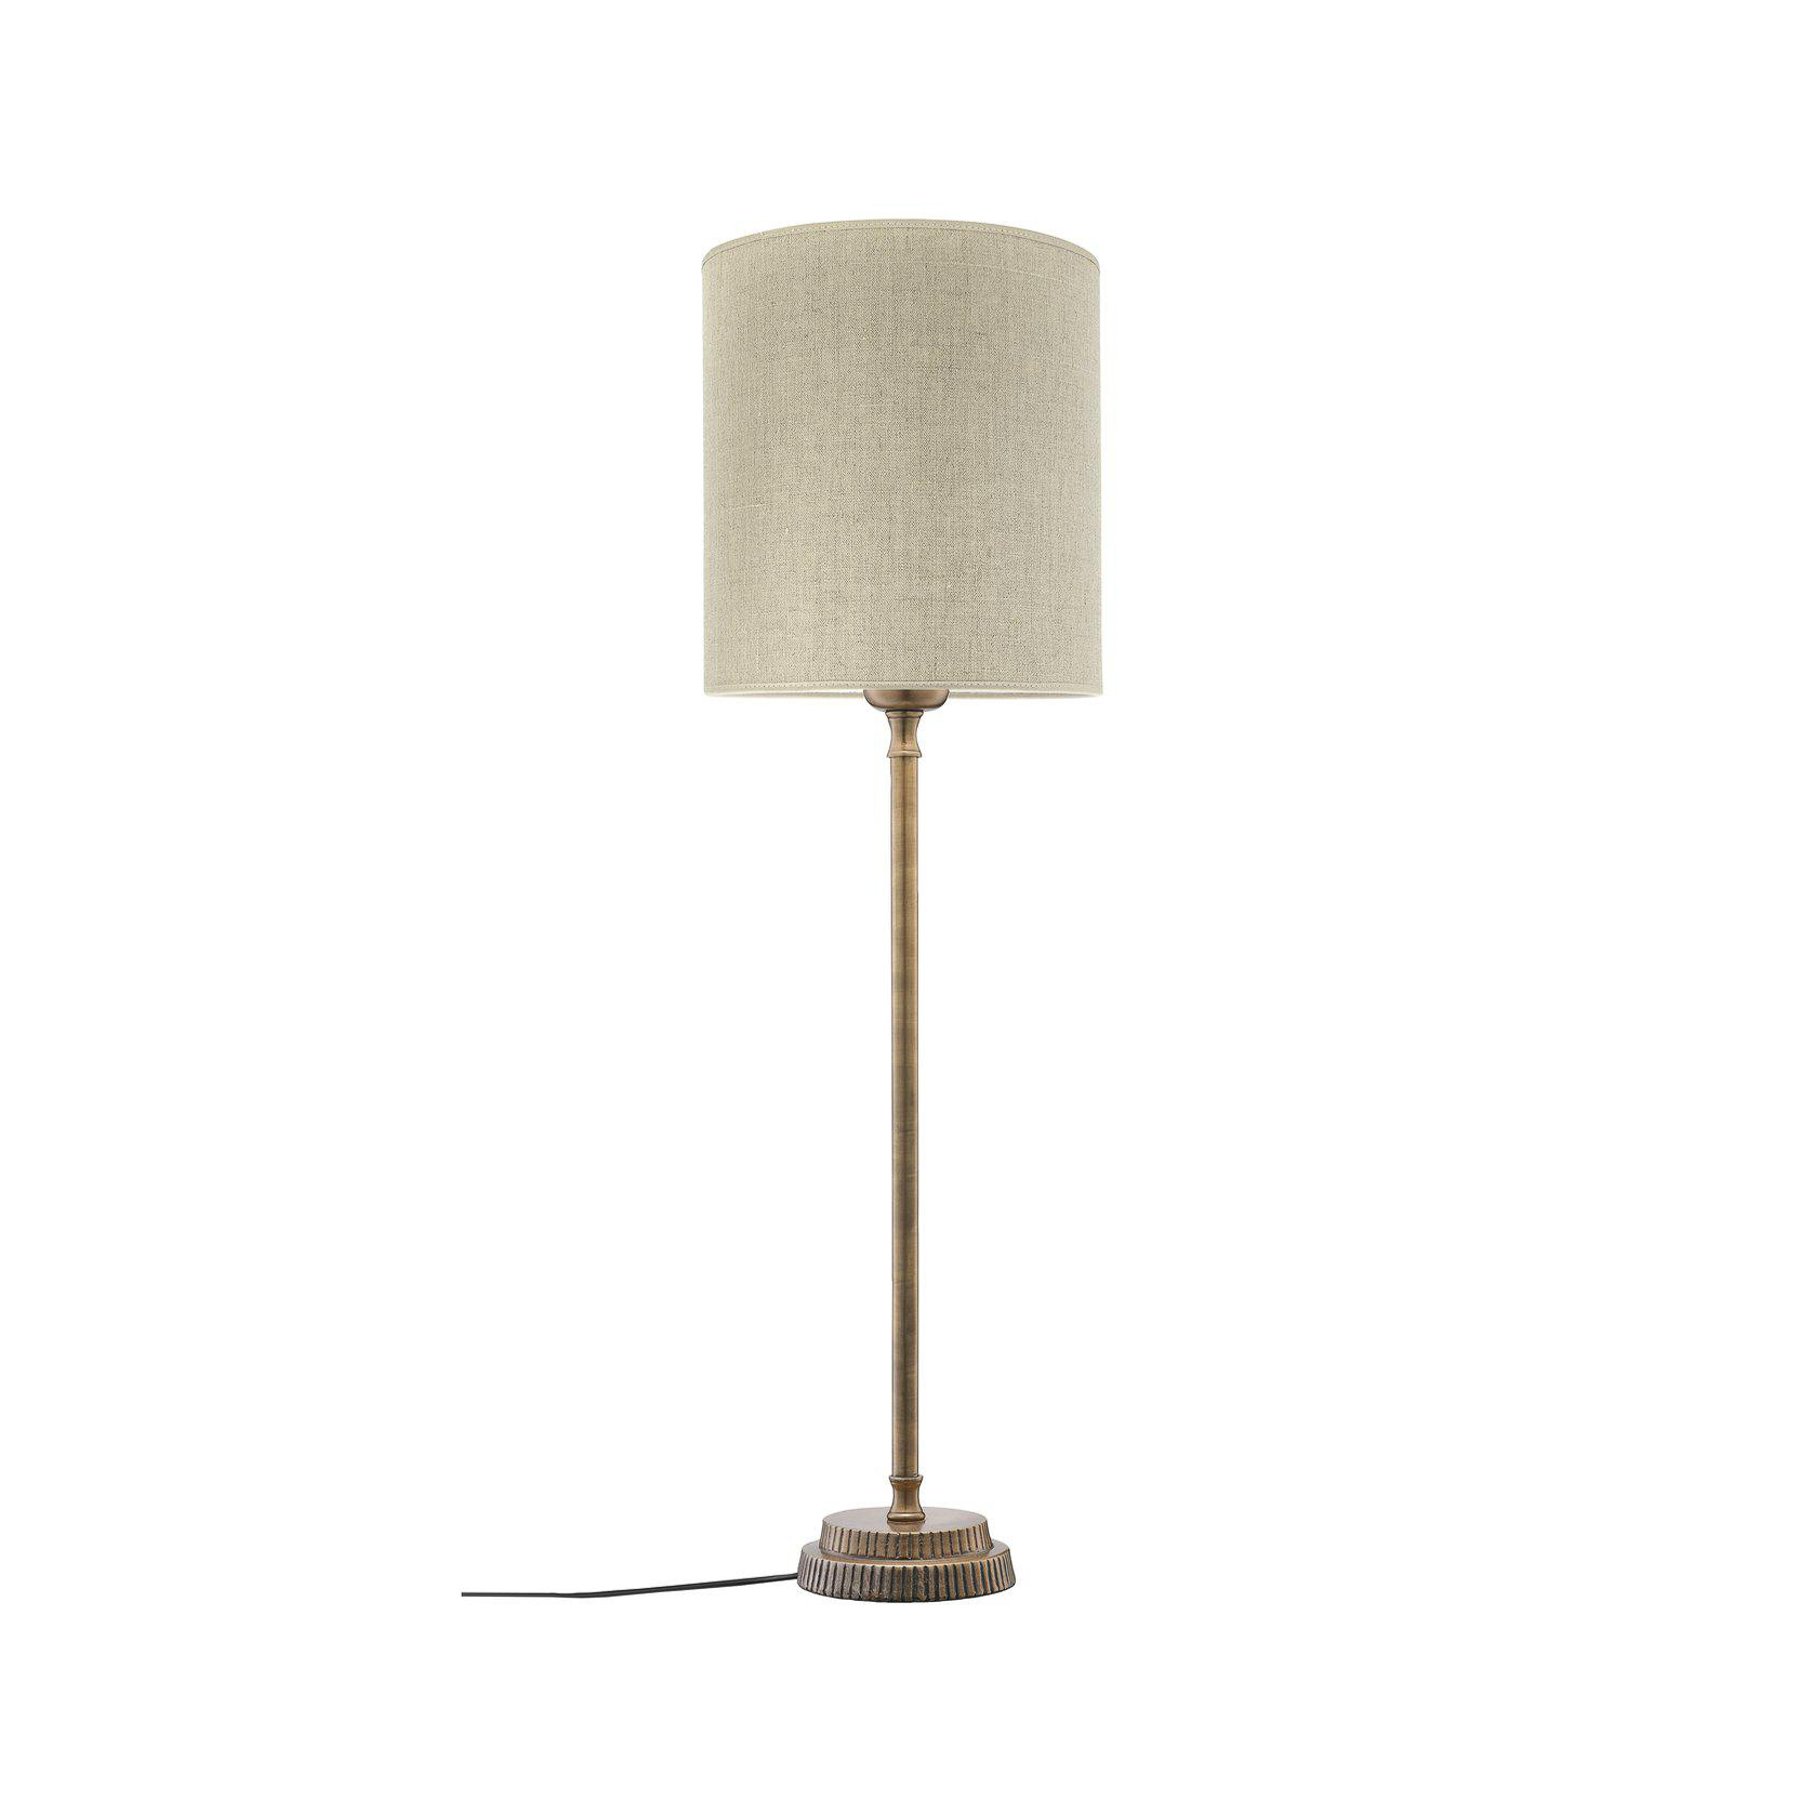 PR Home bordslampa Kent beige/mässing skärm Celyn cylinder